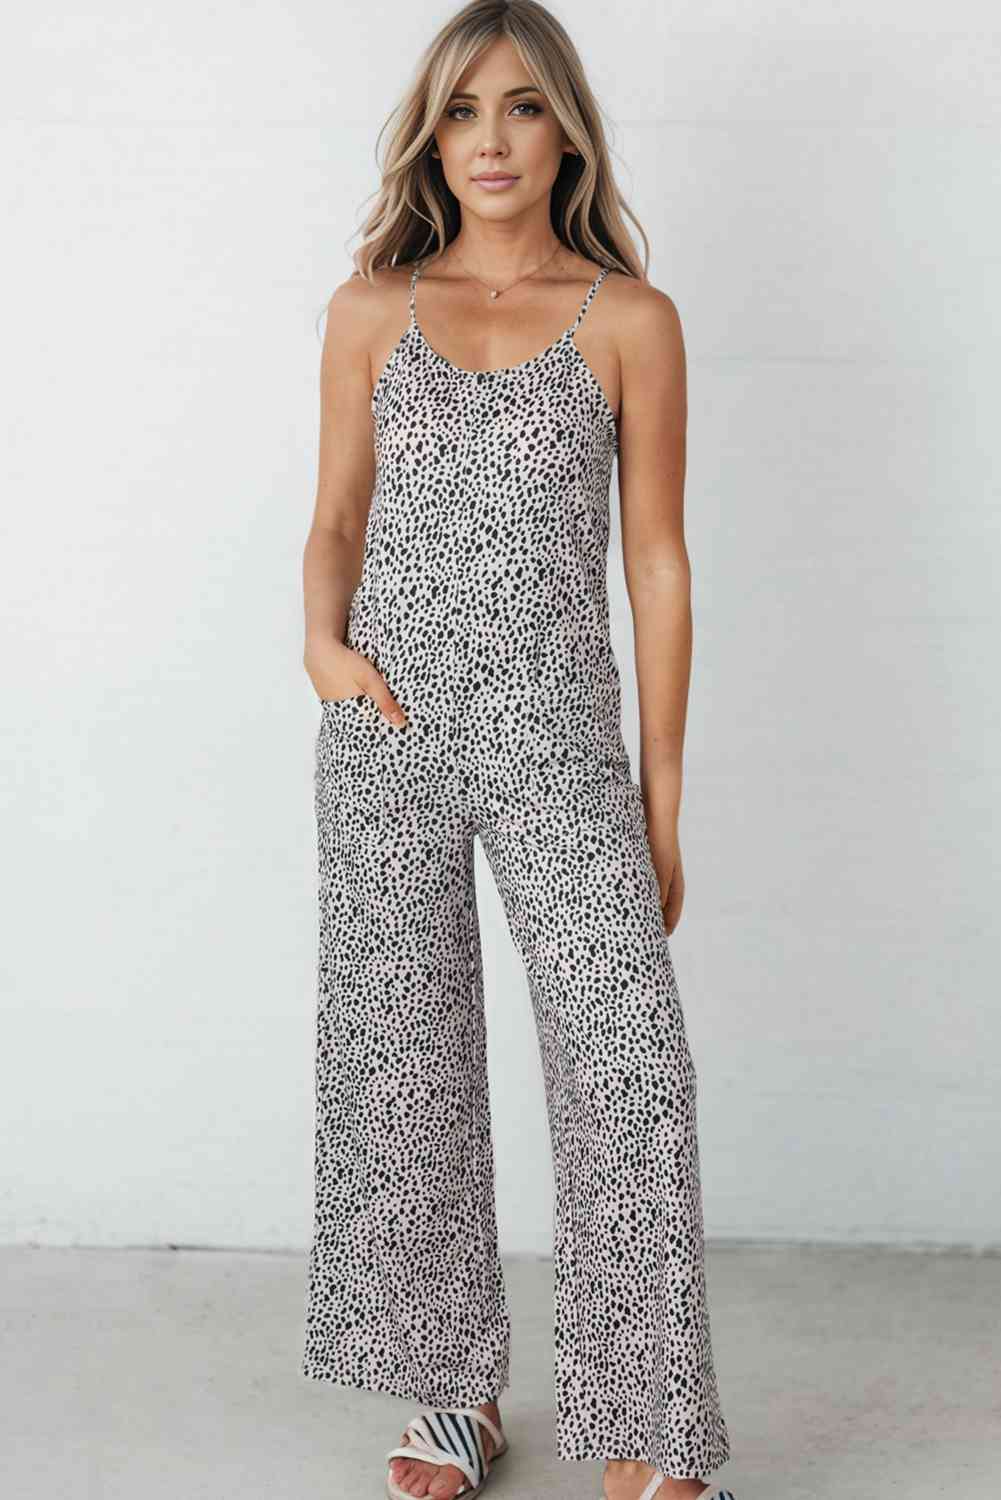 Printed Spaghetti Strap Jumpsuit with Pockets - Pahabu - Women Fashion & Jewelry